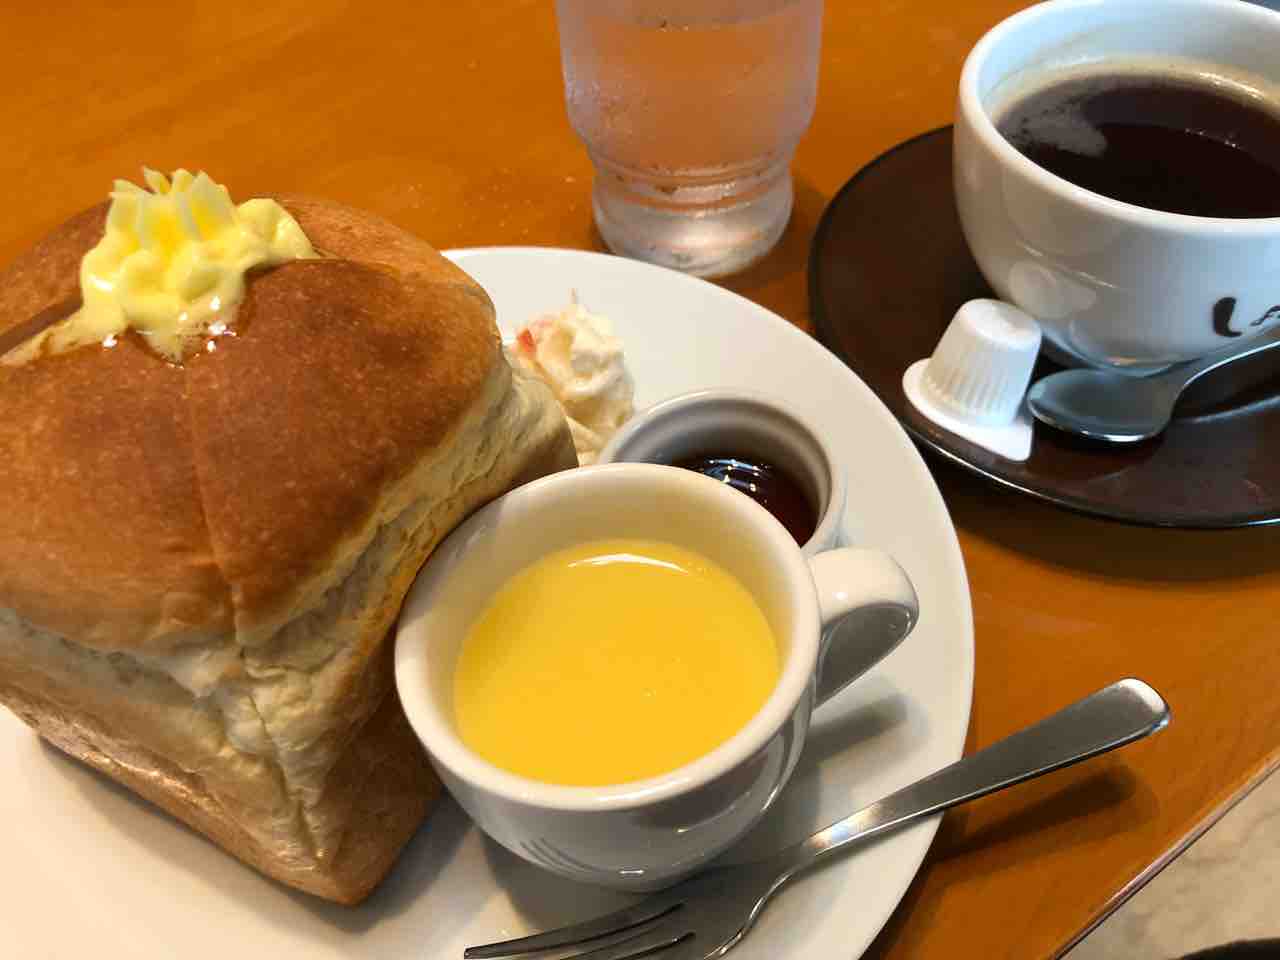 『cafe しょぱん』サイコロ食パン、メープルシロップ、スープ、ポテトサラダのモーニング